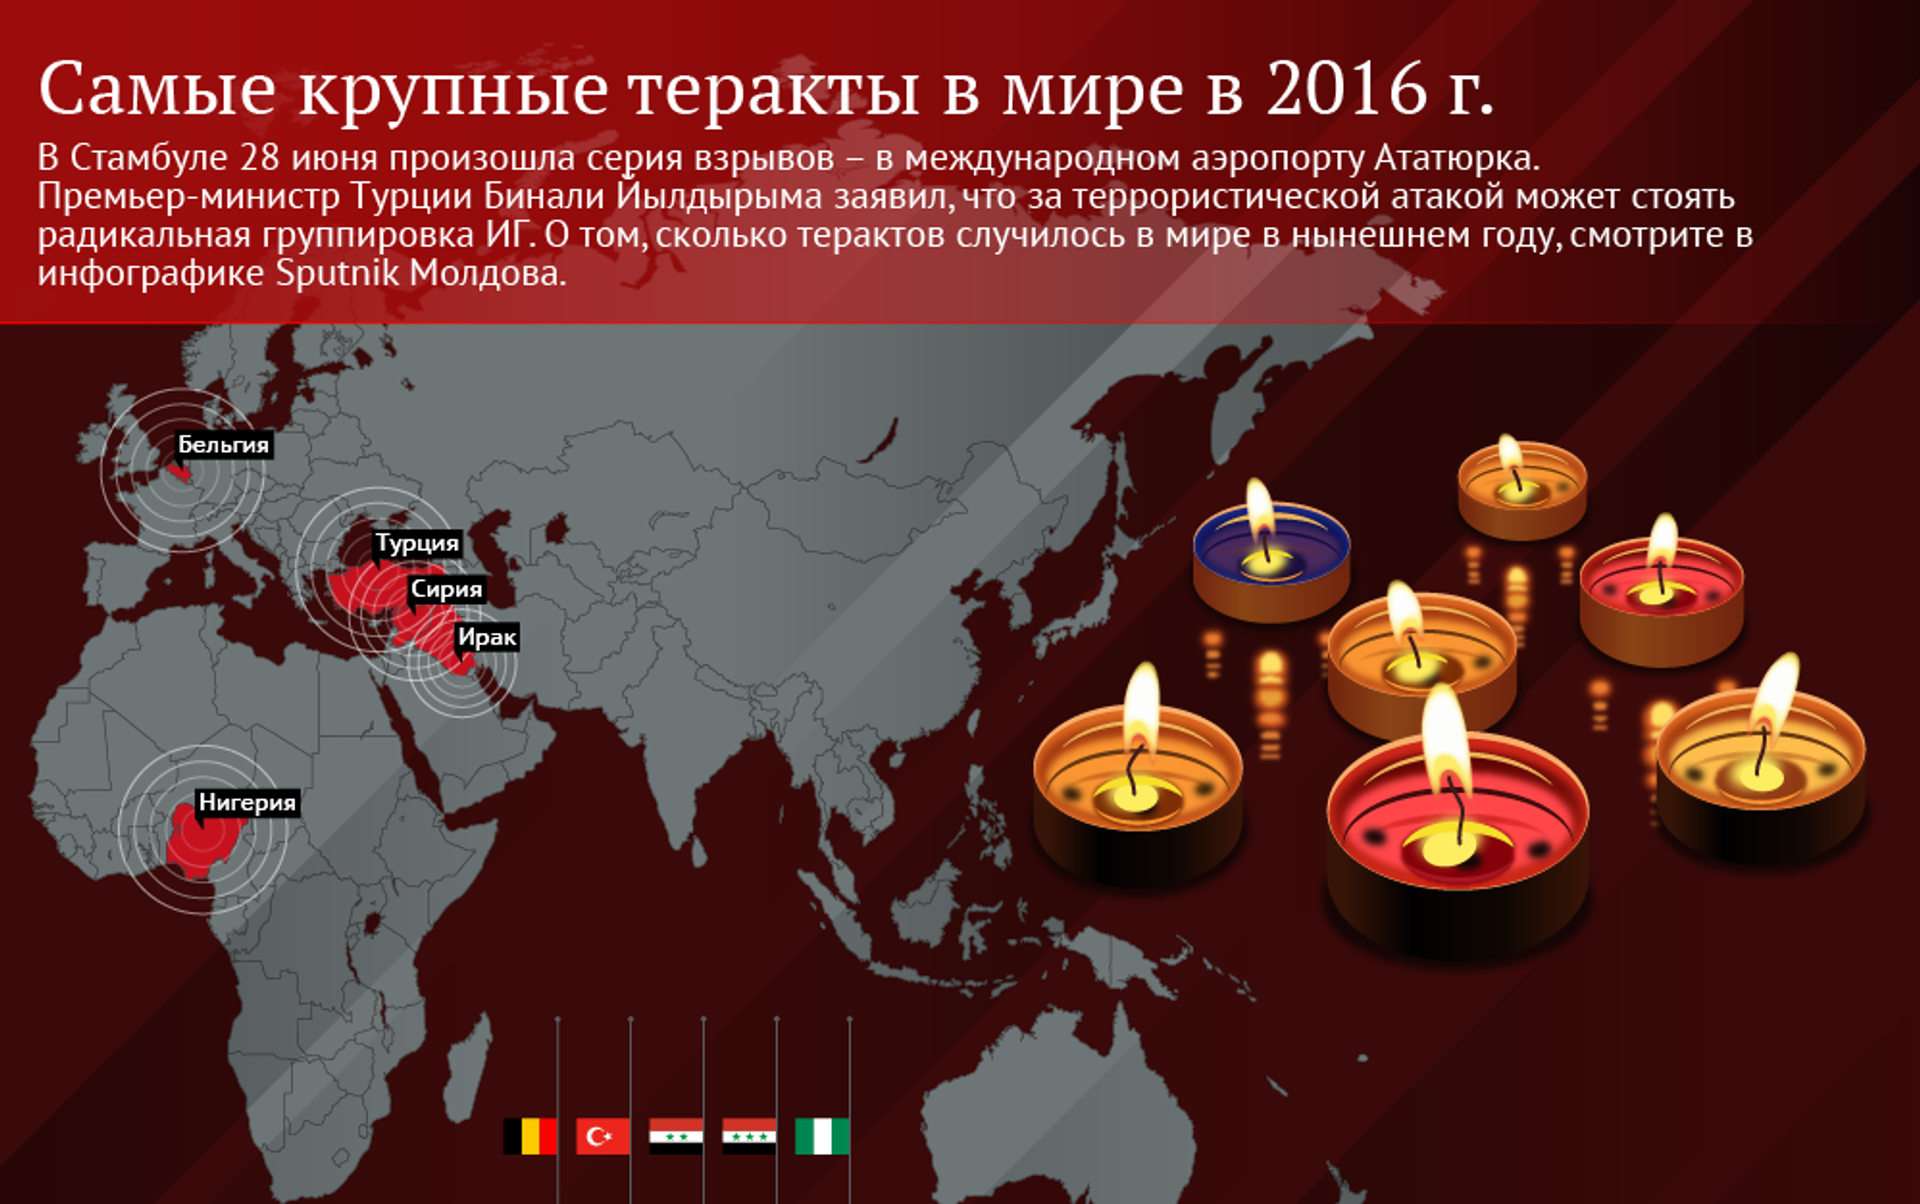 Самые крупные теракты в мире. Топ 5 терактов в мире. Крупнейших террористических актах в России и за рубежом.